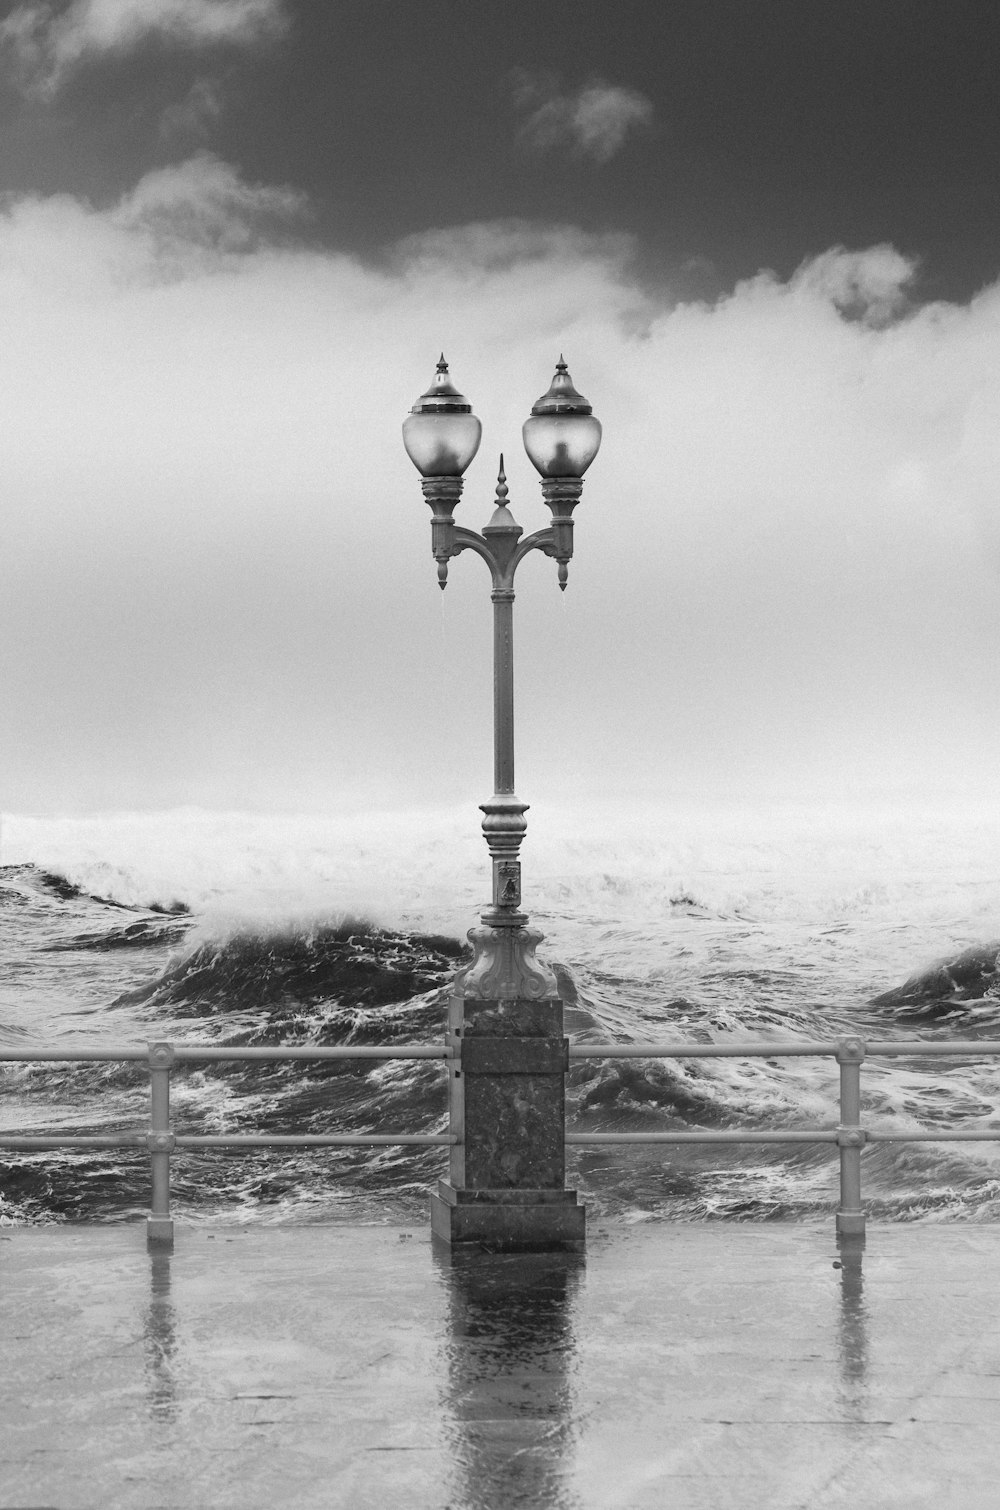 fotografia in scala di grigi della lampada all'aperto vicino al mare